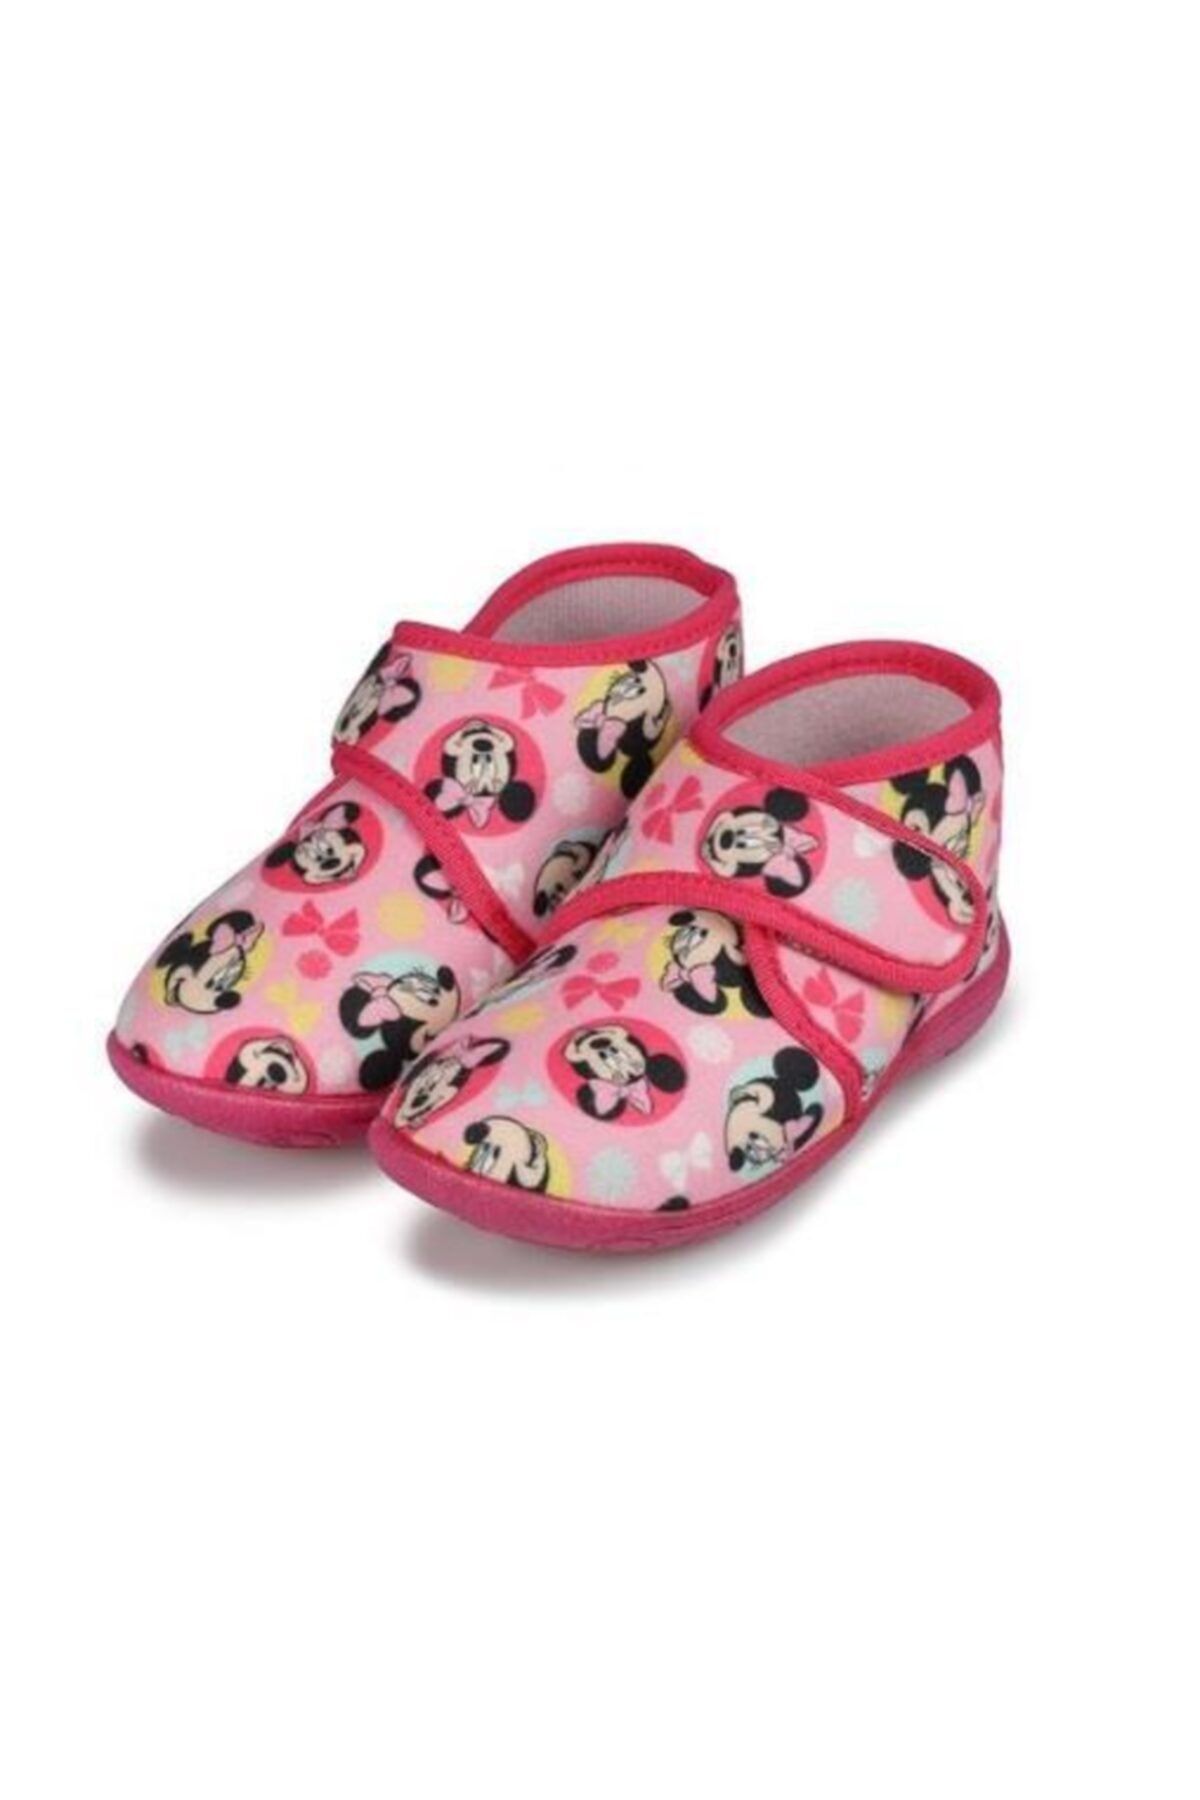 Hakan Çanta Minnie Mouse Lisanslı Panduf Çocuk Ayakkabısı 22 Numara